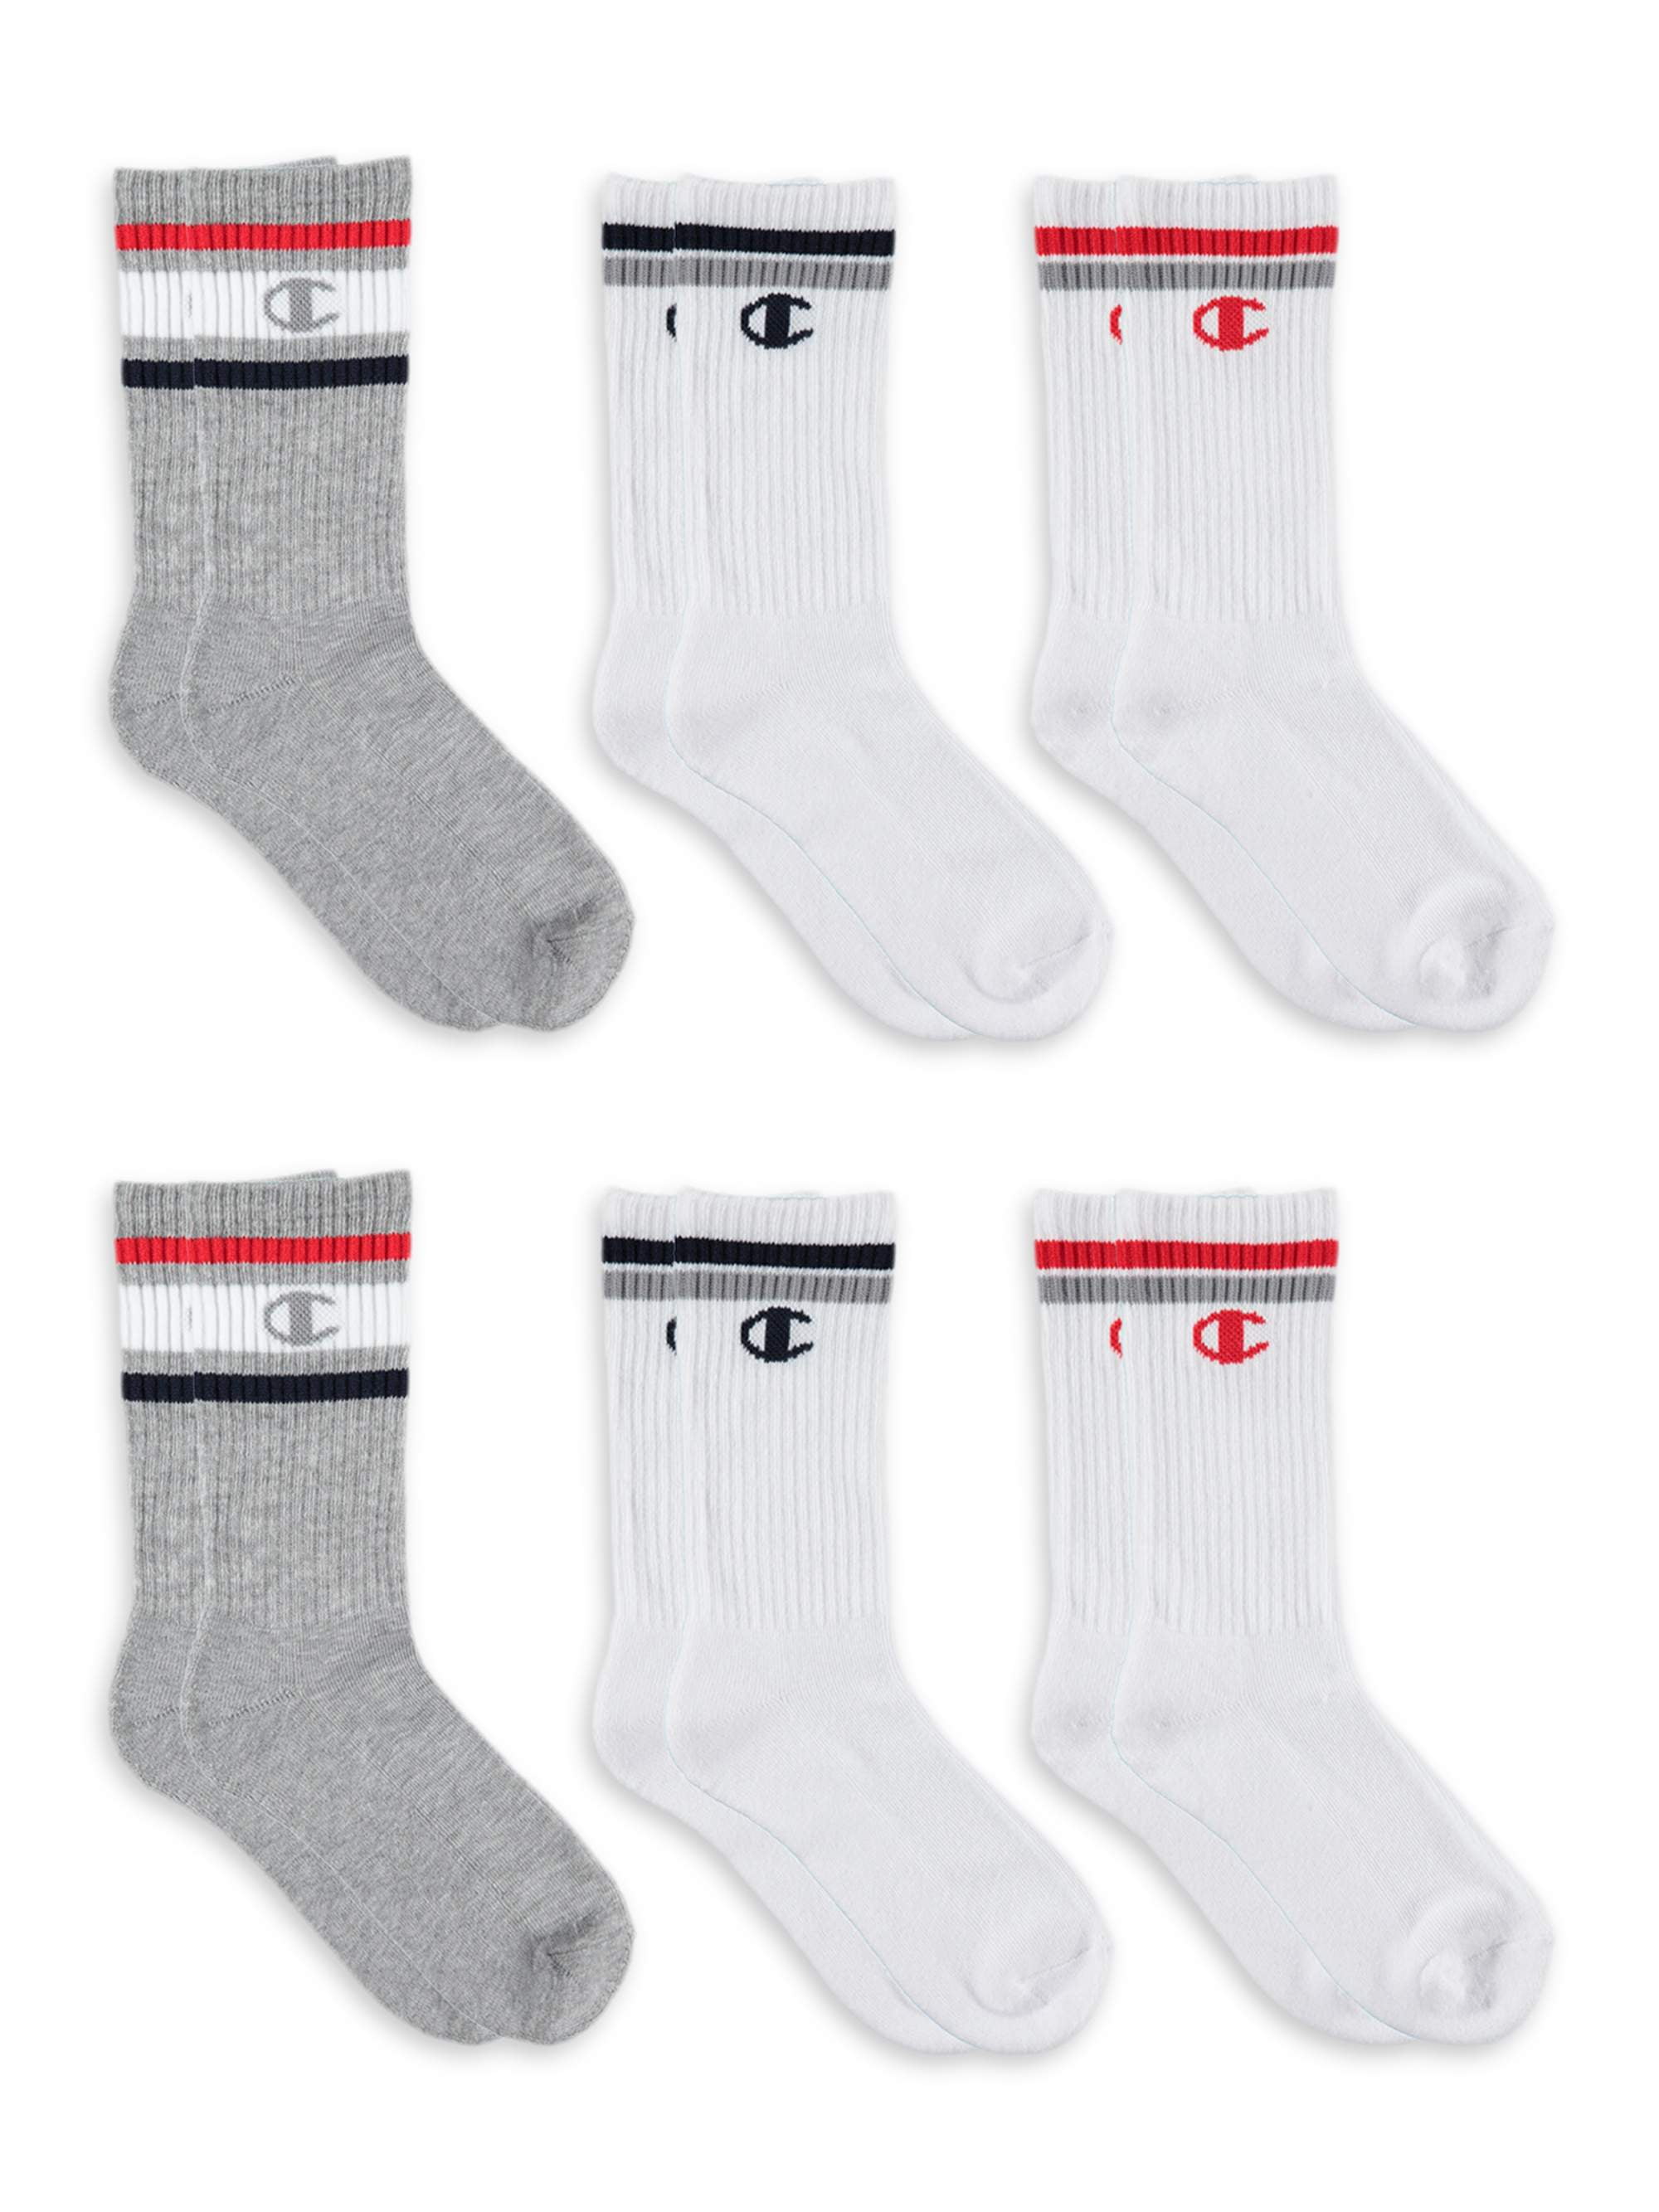 Pack Socks, - Champion 6 Crew 7 Unisex Sizes 11 Socks,